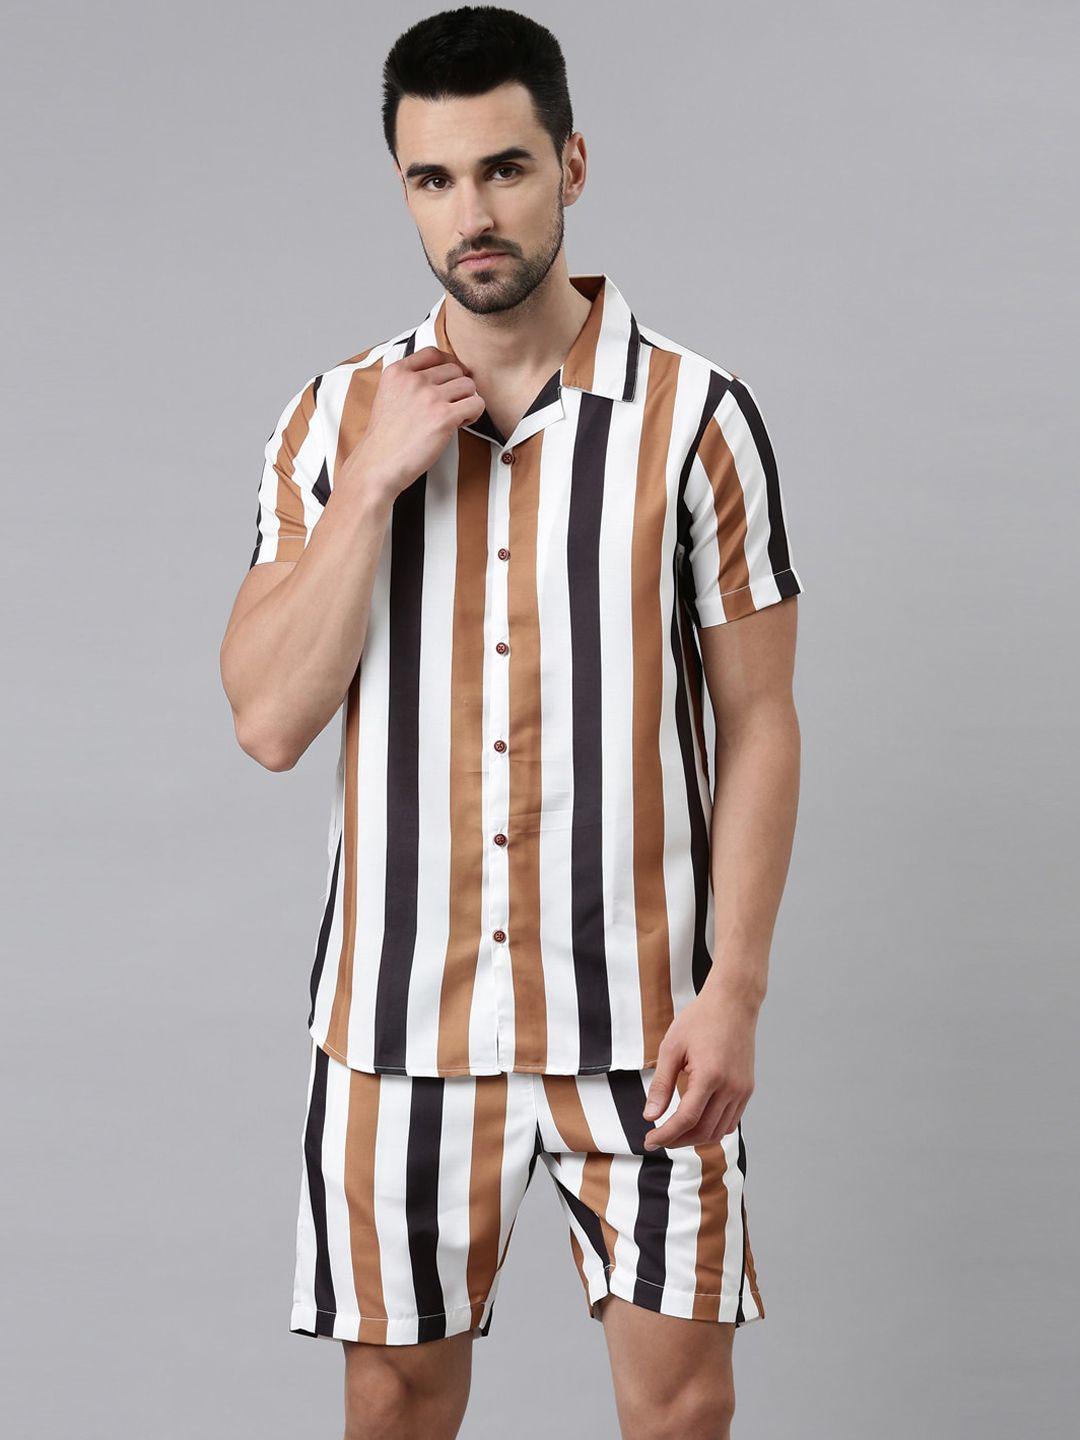 bushirt men brown & white striped night suit